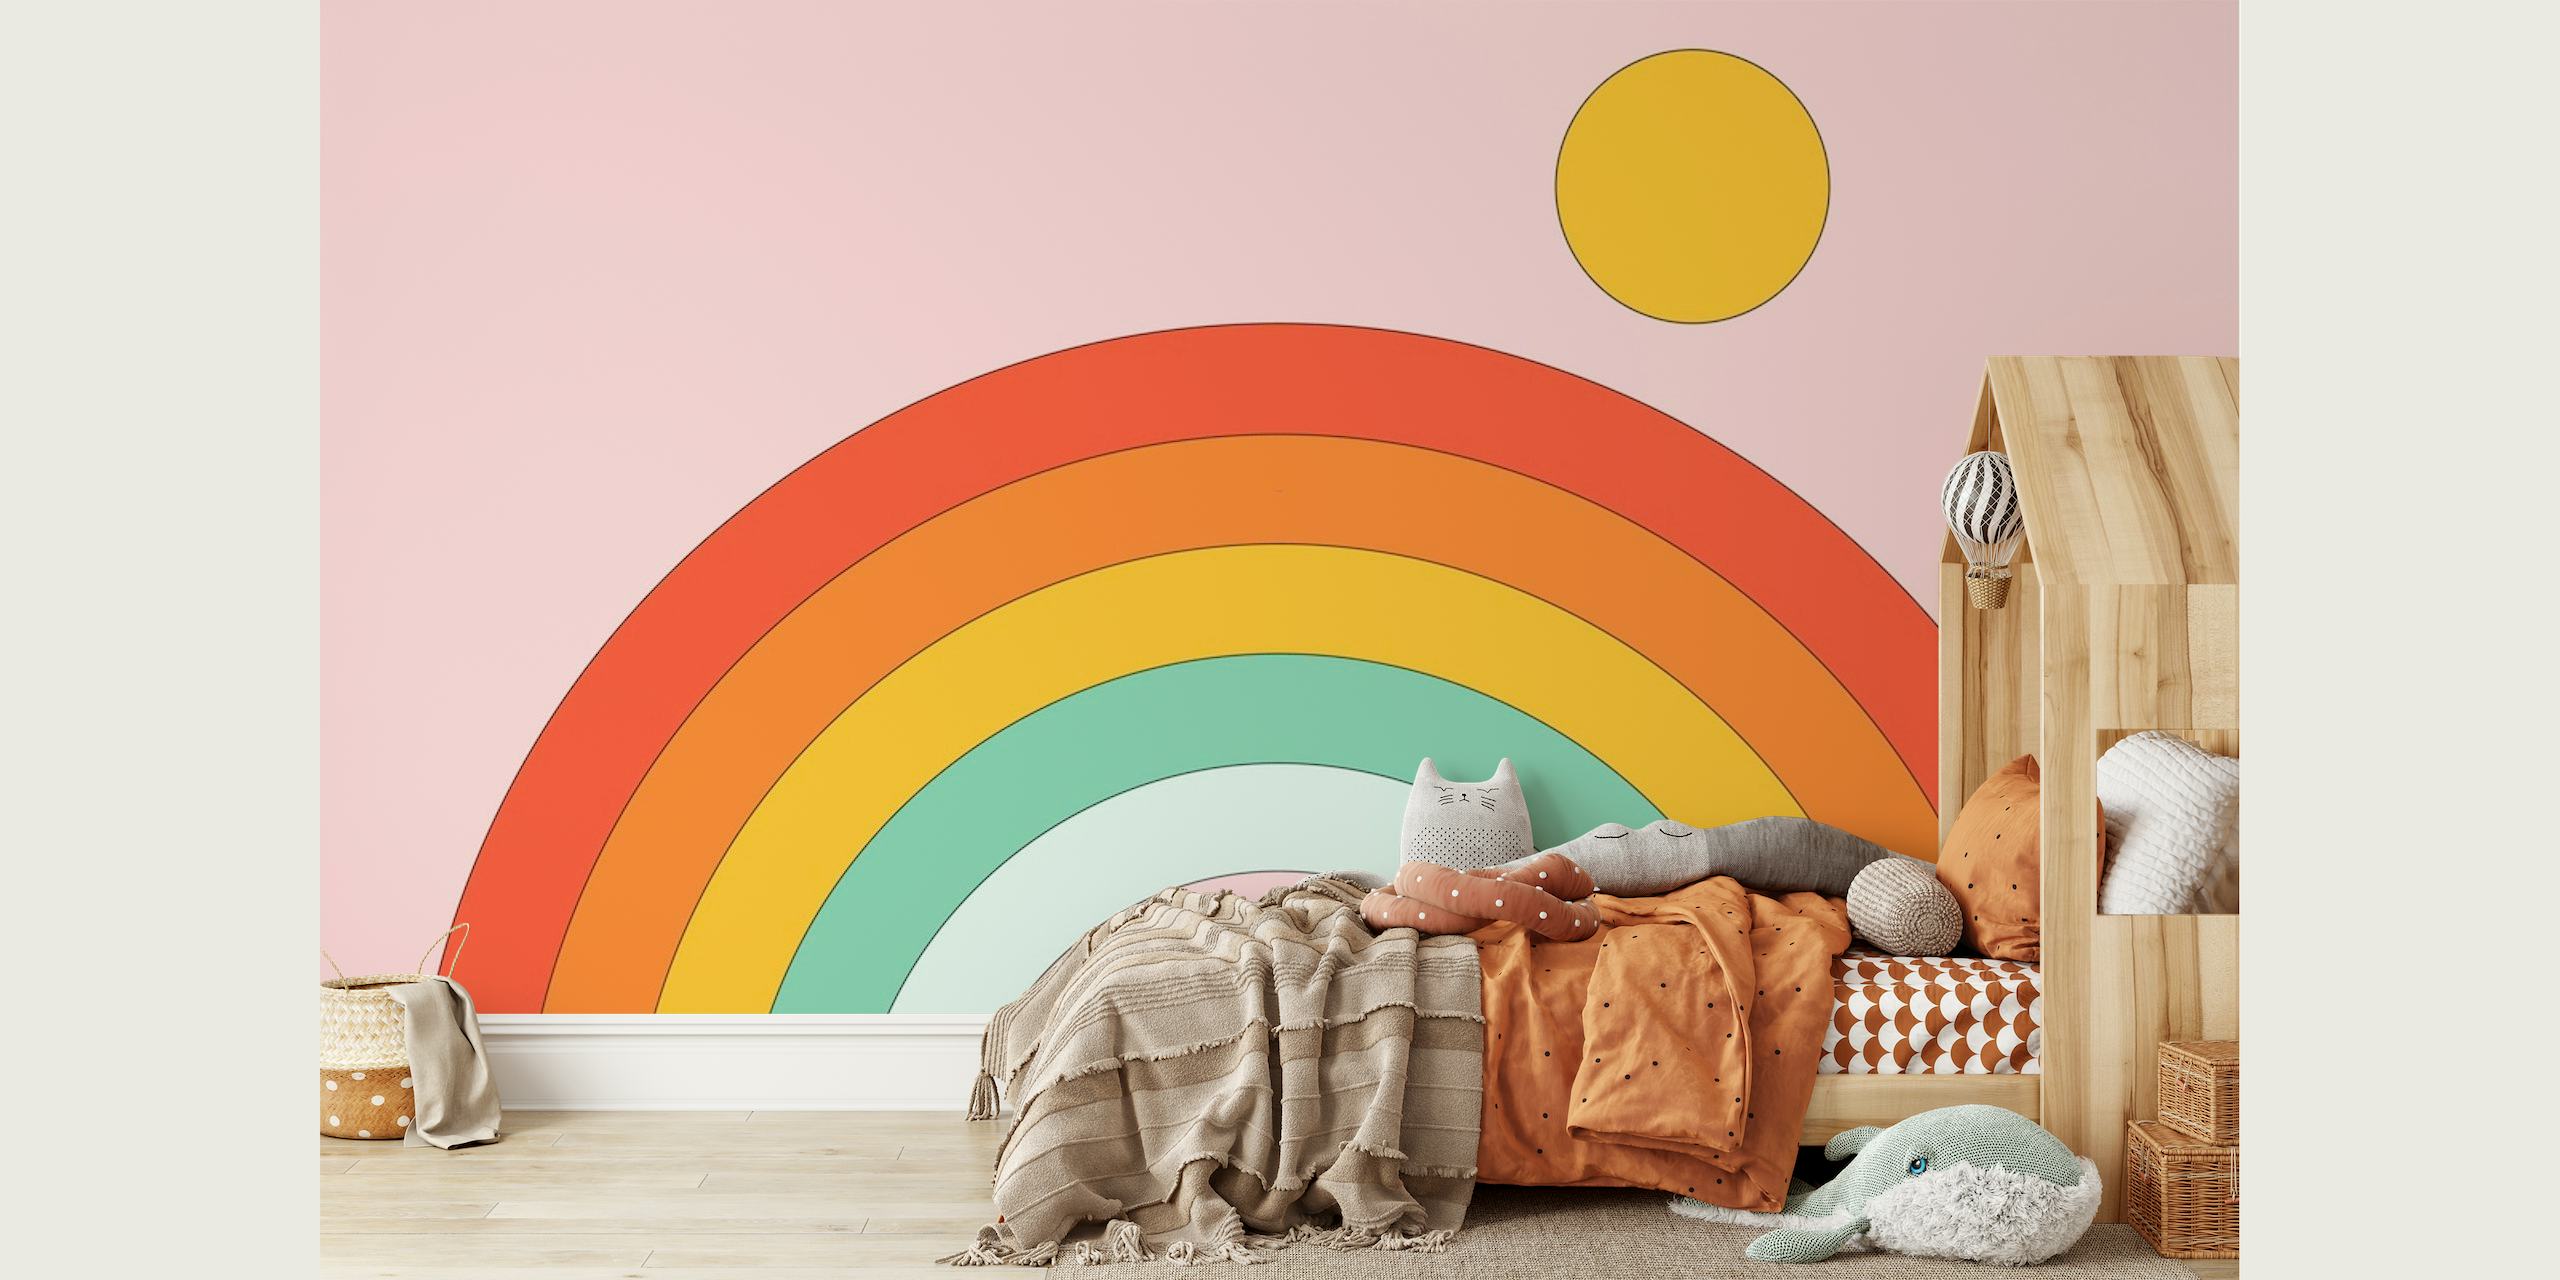 Kleurrijke regenboogmuurschildering in retrostijl op een roze achtergrond